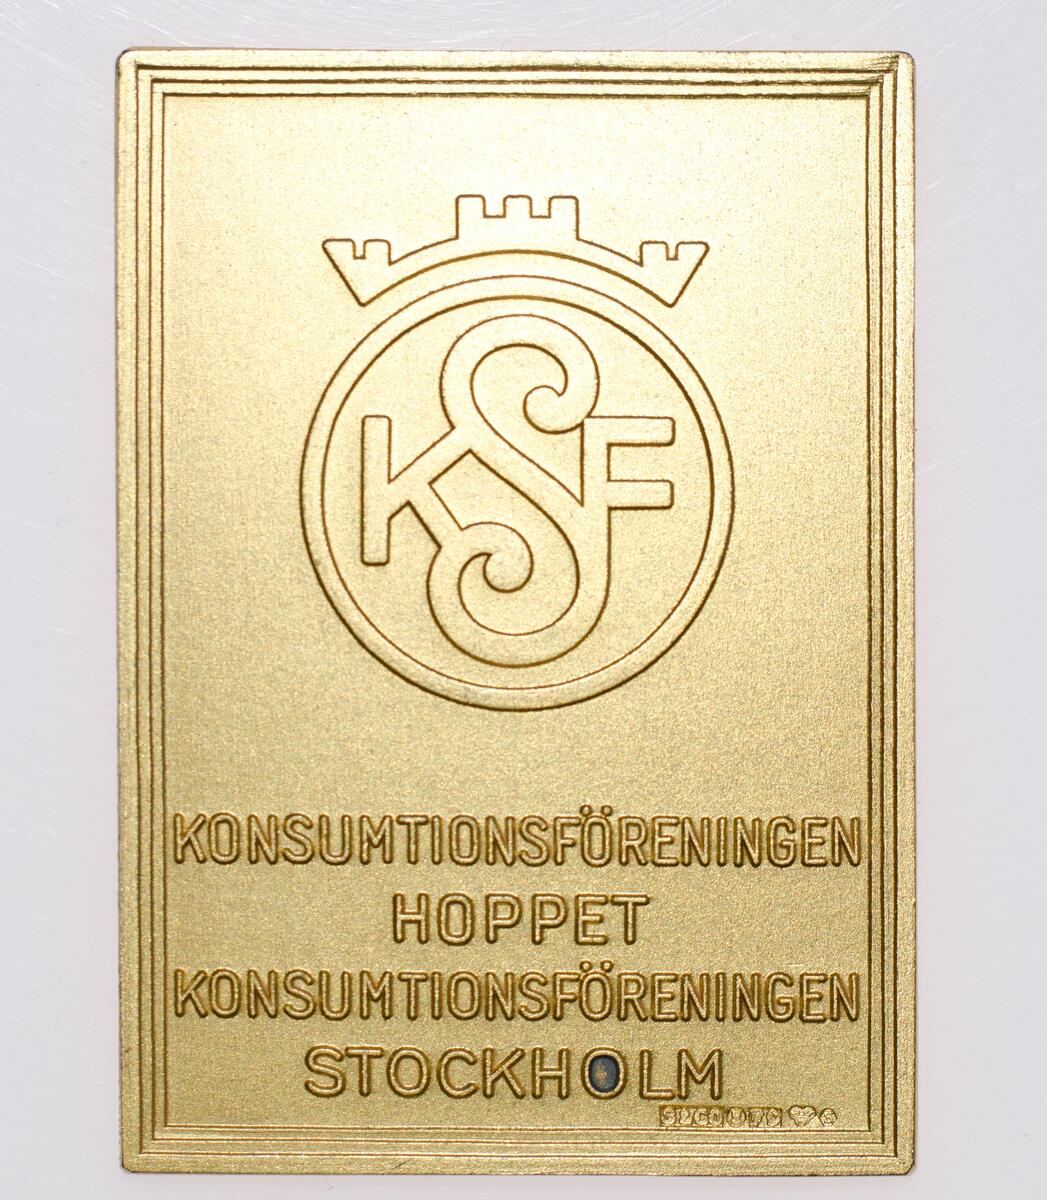 Medaljong: Konsumtionsföreningen hoppet, Konsumtionsföreningen Stockholm

